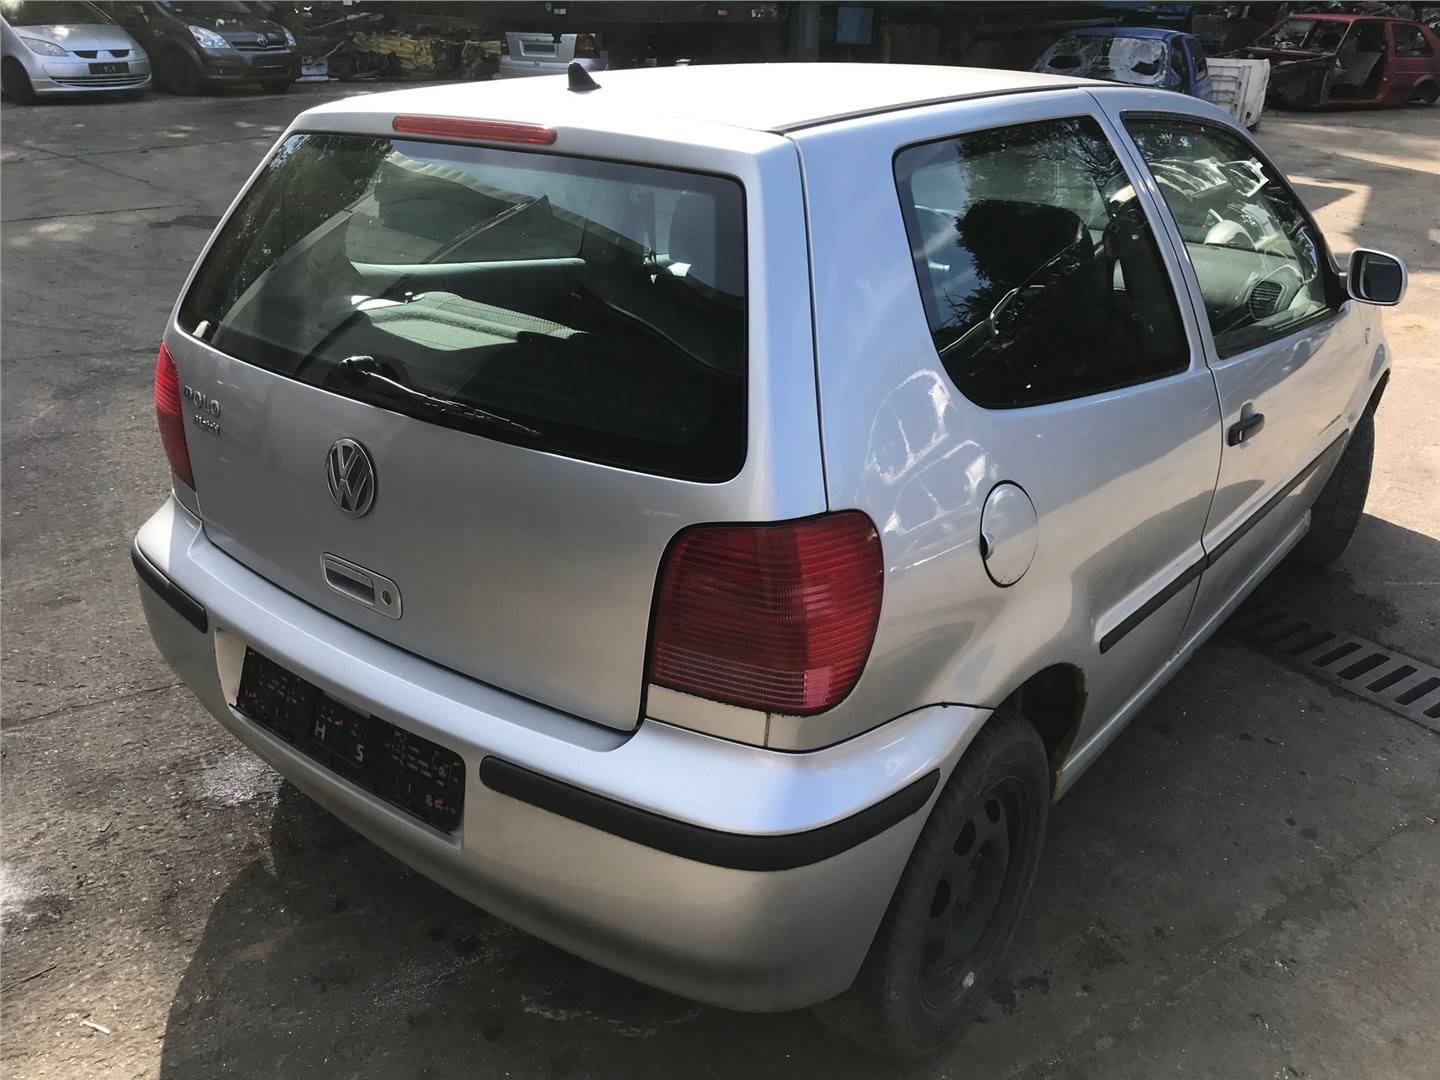 6N0823301E Петля капота левая Volkswagen Polo 1999-2001 2001